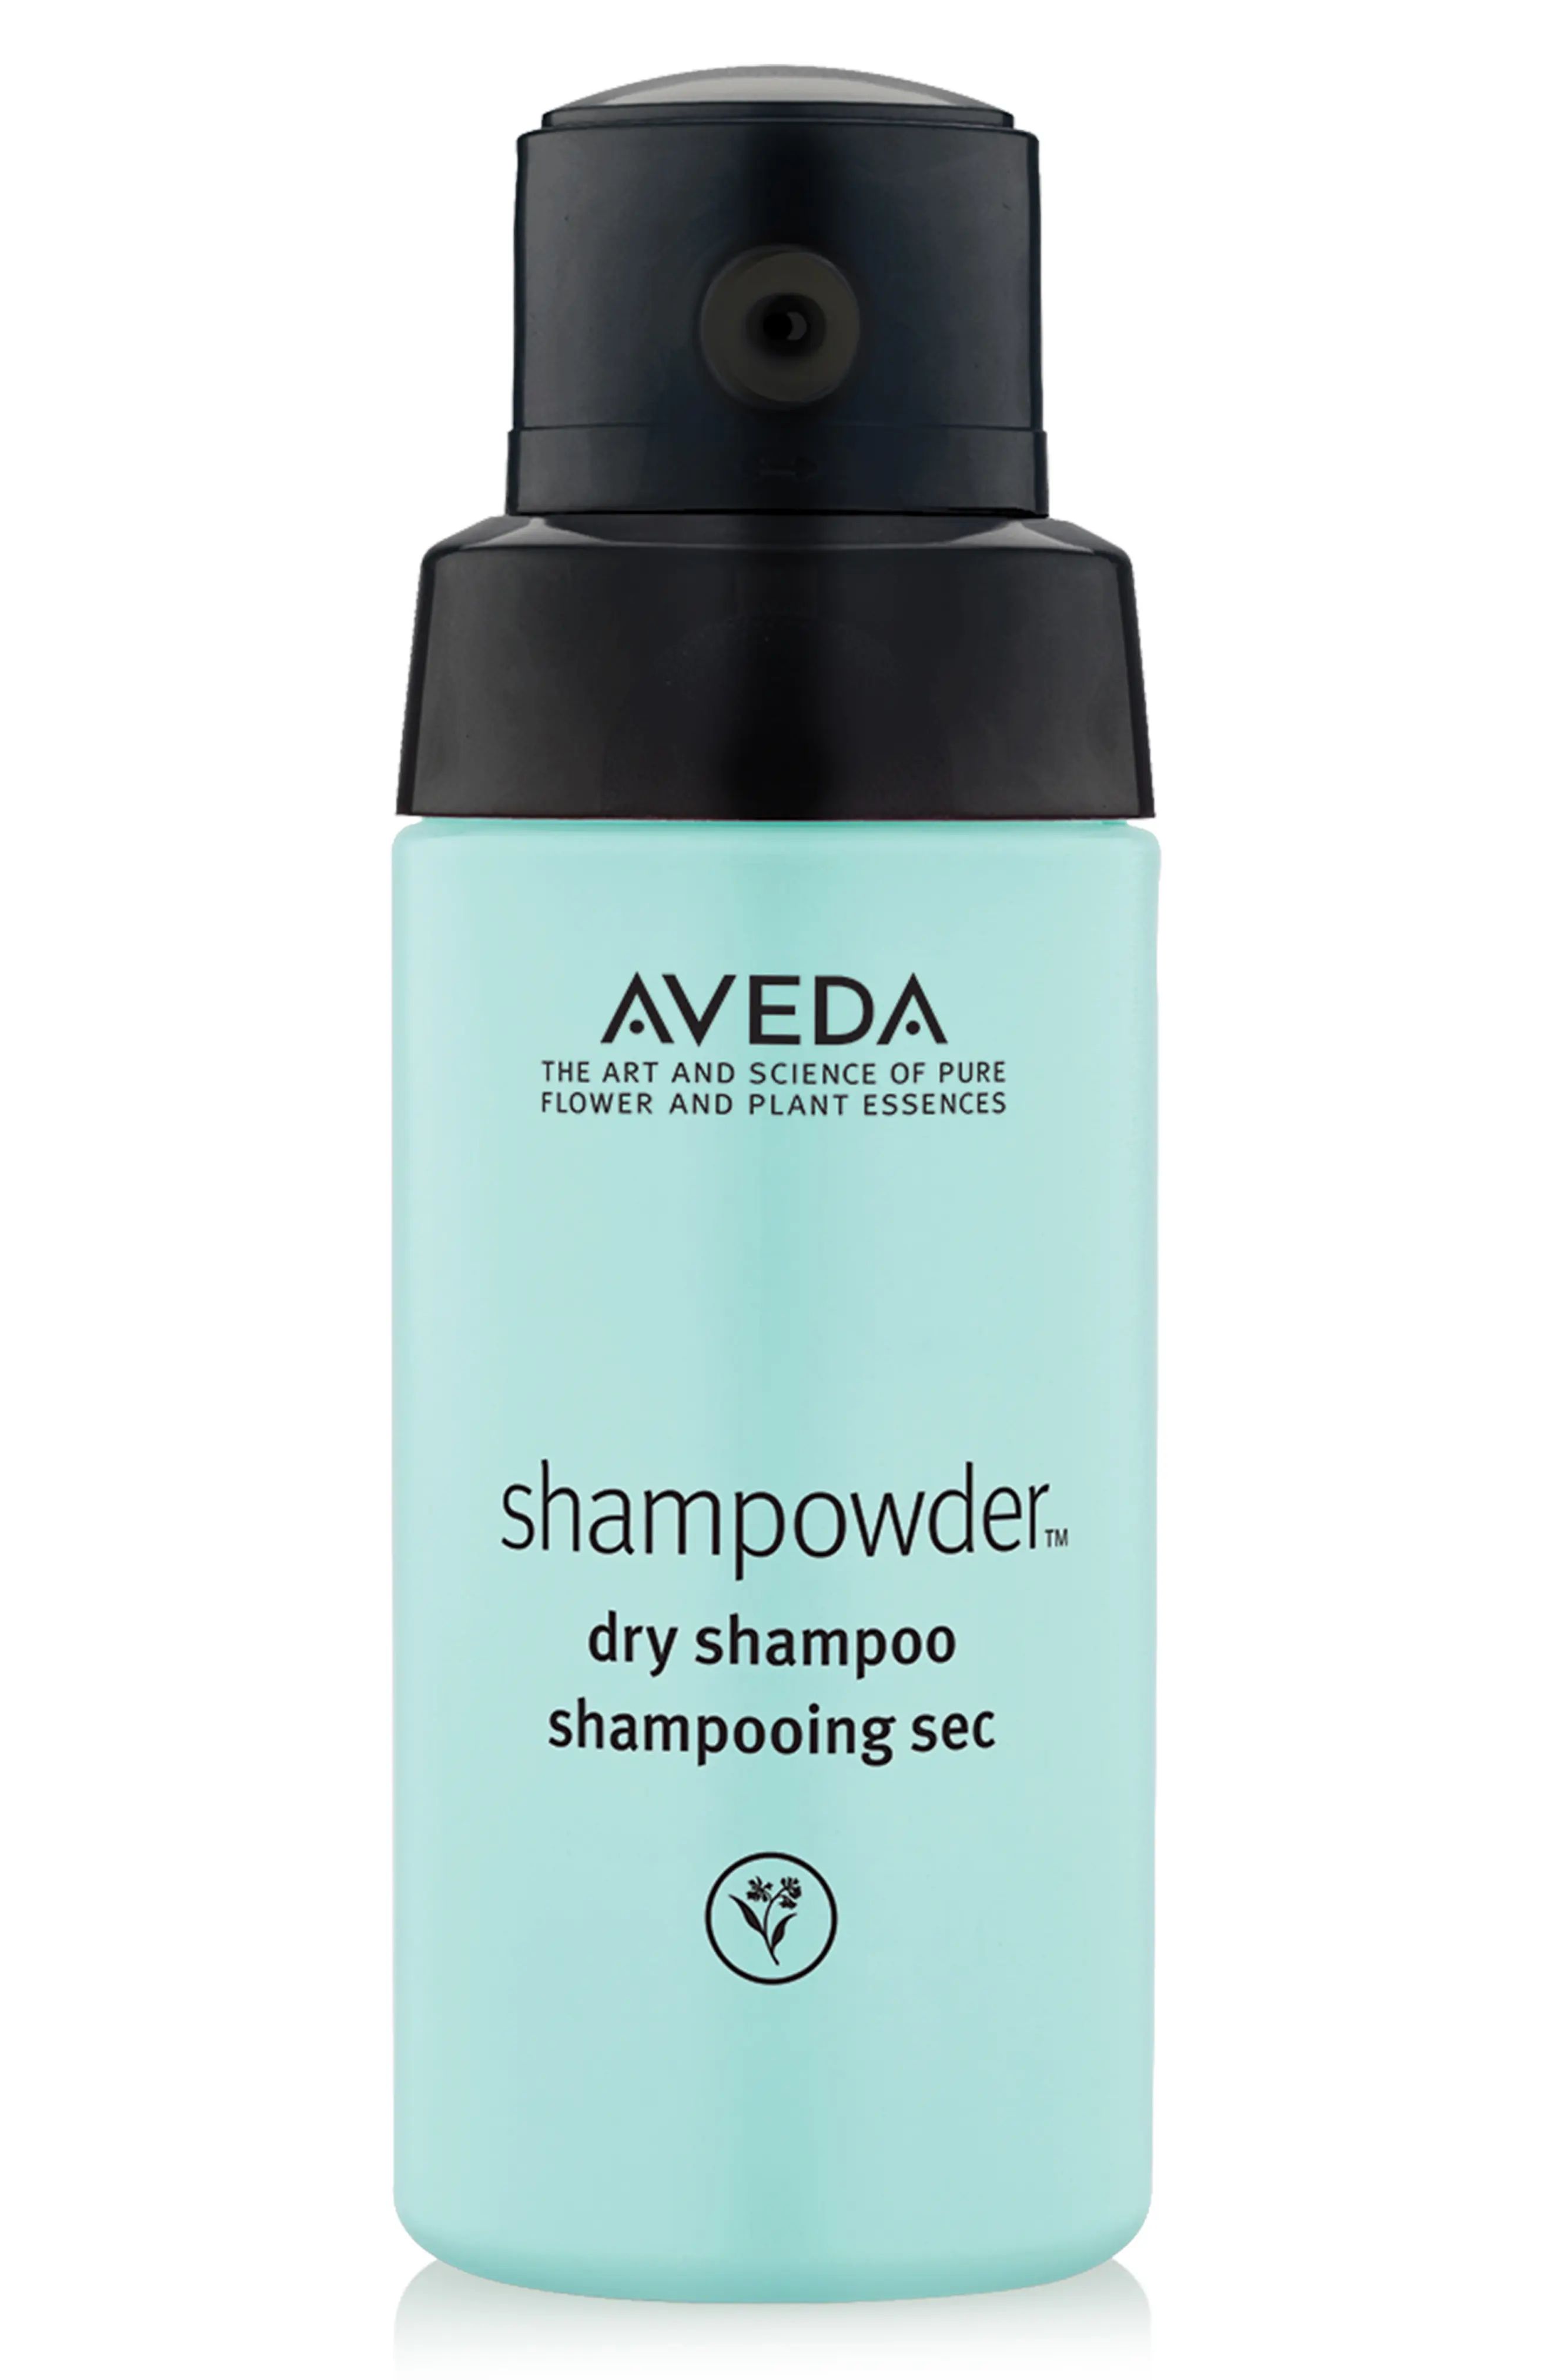 Aveda shampowder(TM) Dry Shampoo at Nordstrom, Size 2 Oz | Nordstrom